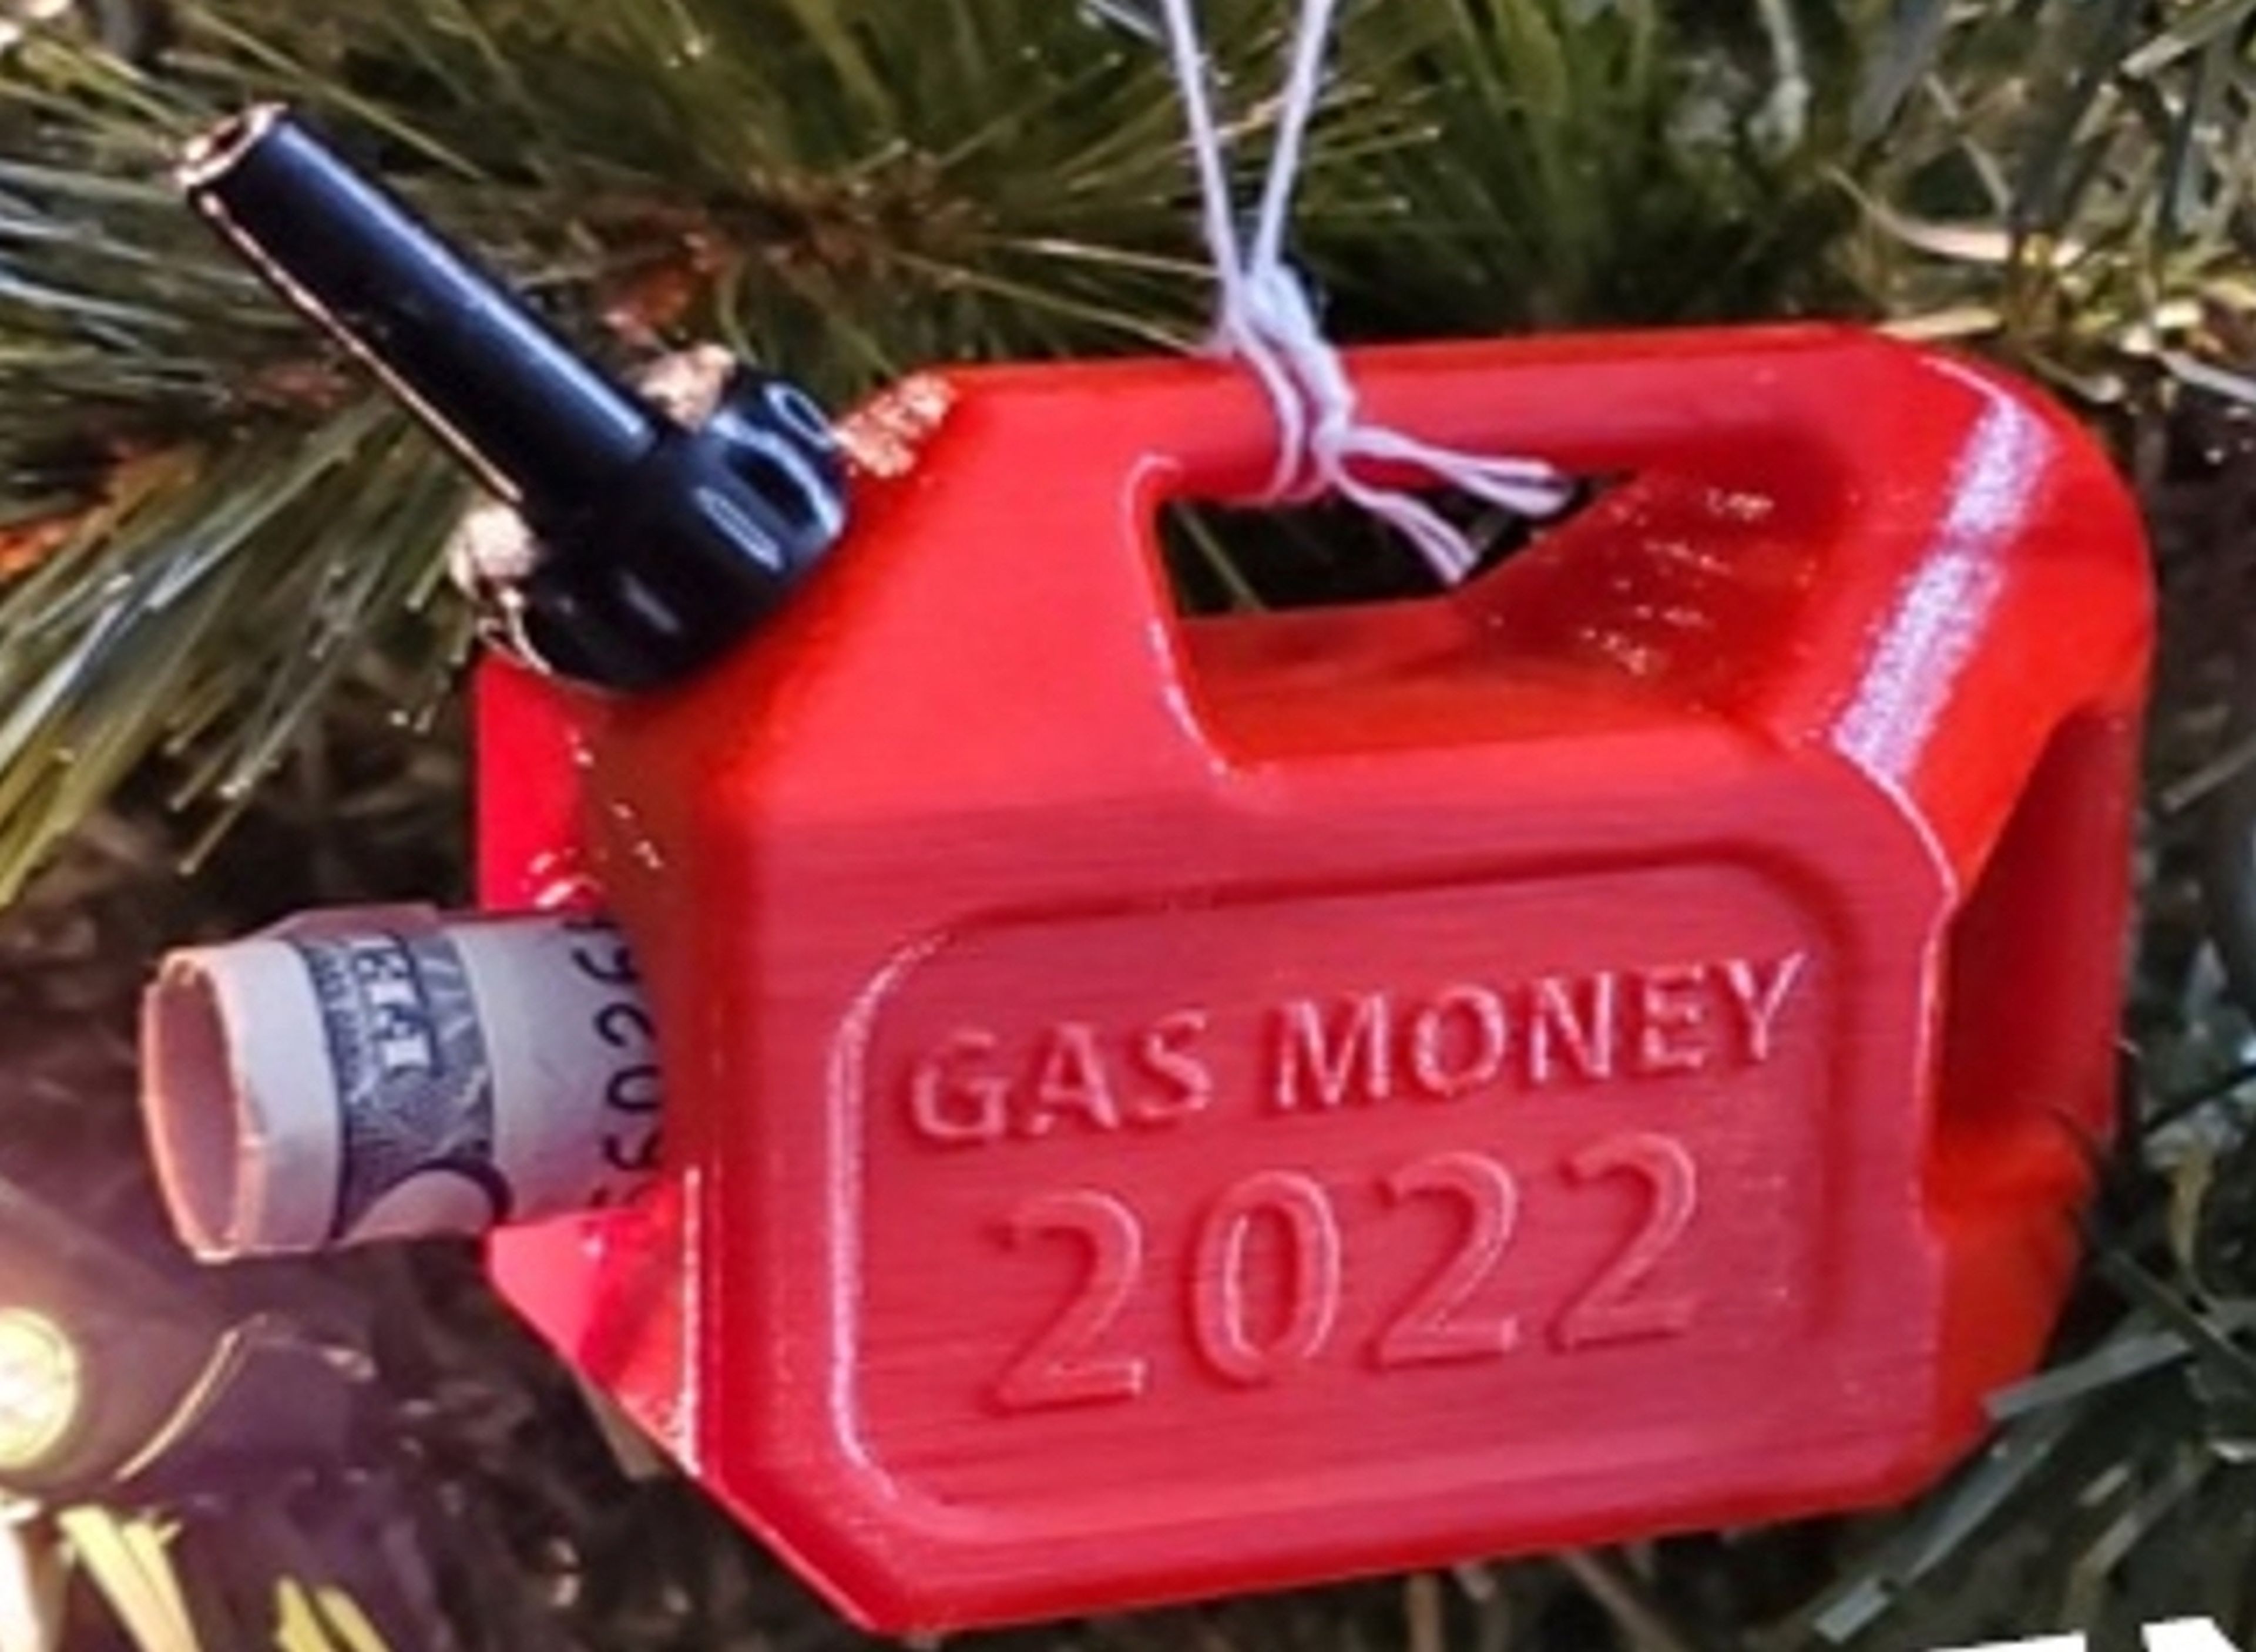 El adorno de navidad original del bidón de gasolina que vendió Ziegler. Selló el año 2022 para conmemorar los altos precios de la gasolina ese año.